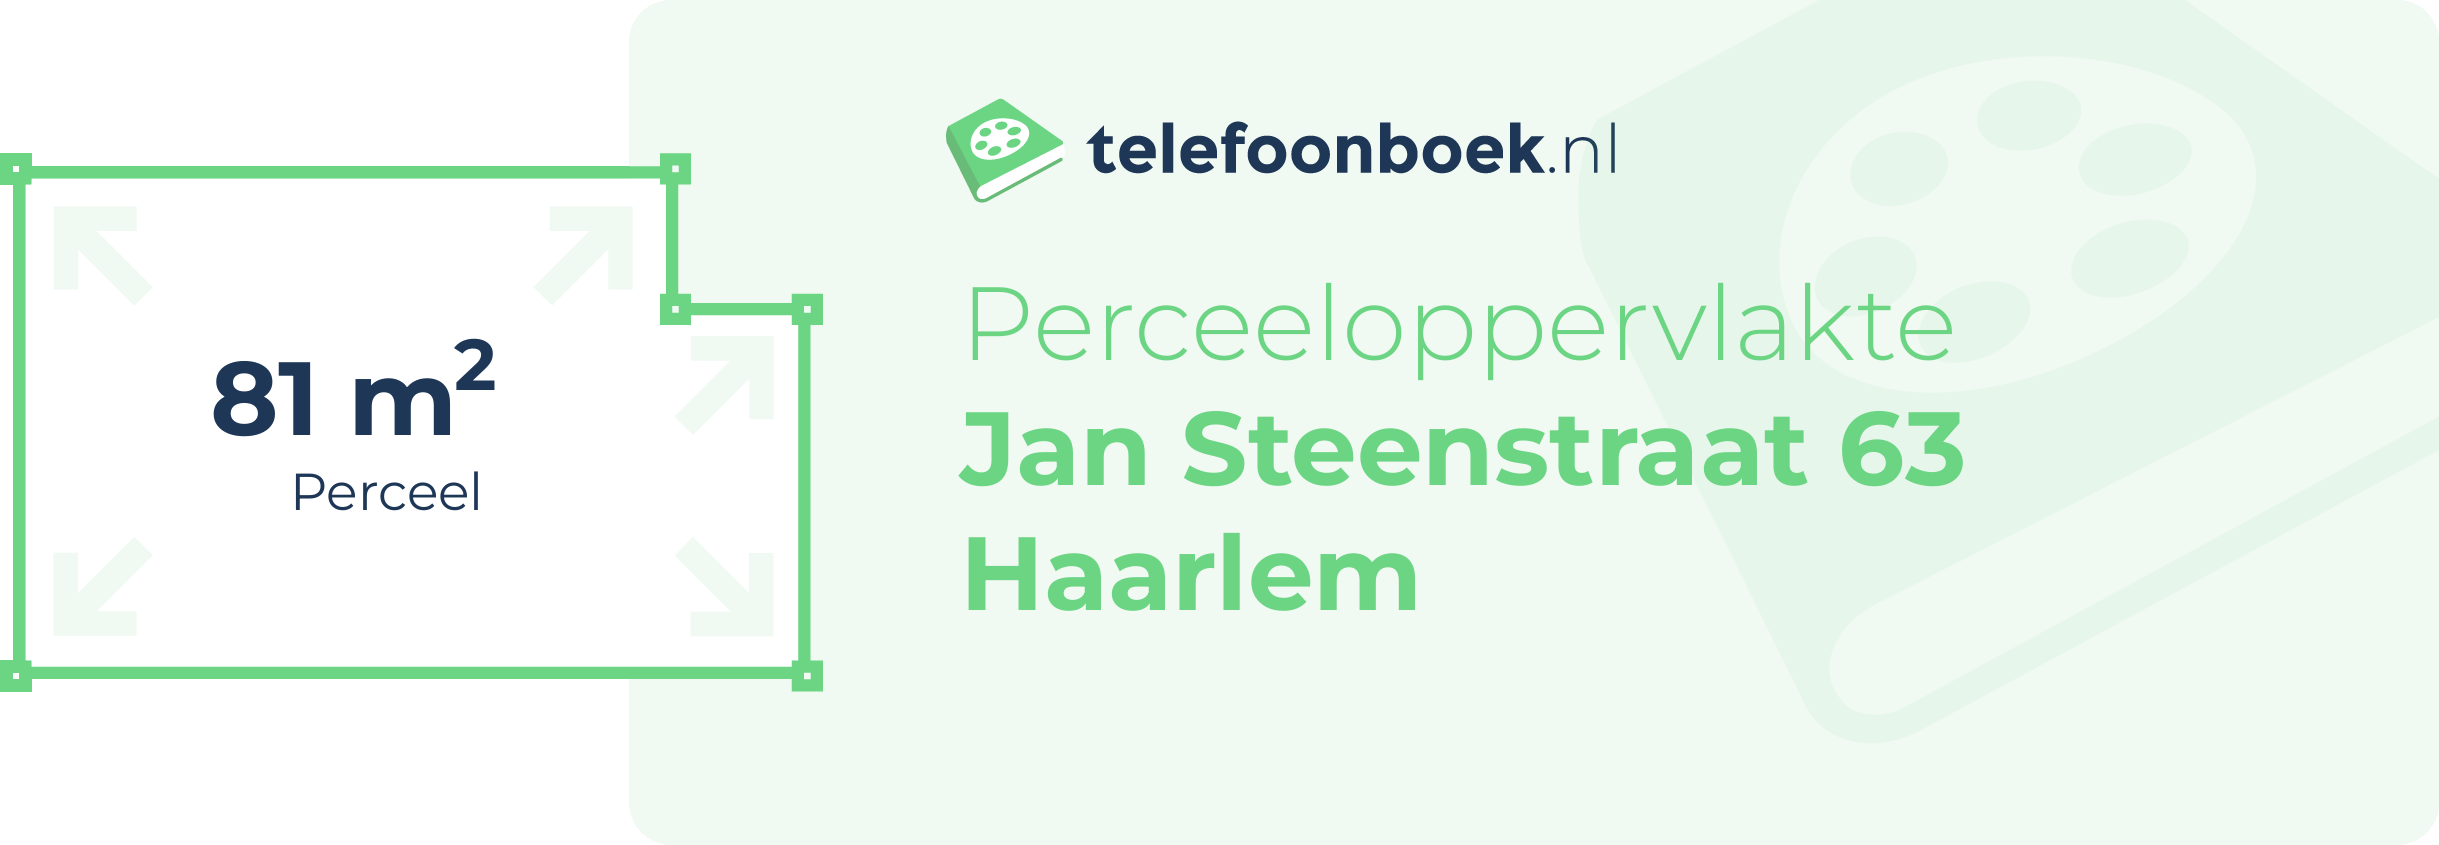 Perceeloppervlakte Jan Steenstraat 63 Haarlem